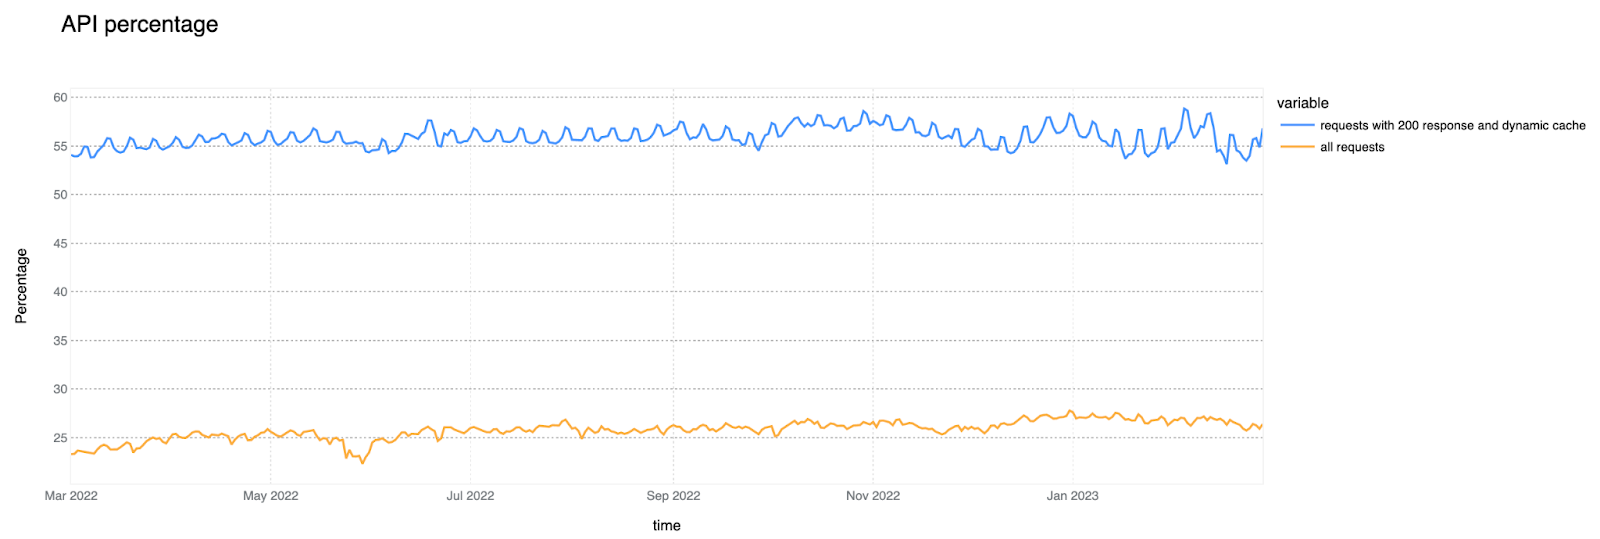 過去12ヶ月間のAPIトラフィック：全HTTPリクエストの割合と200レスポンスのキャッシュ不可なHTTPリクエストの割合（%）